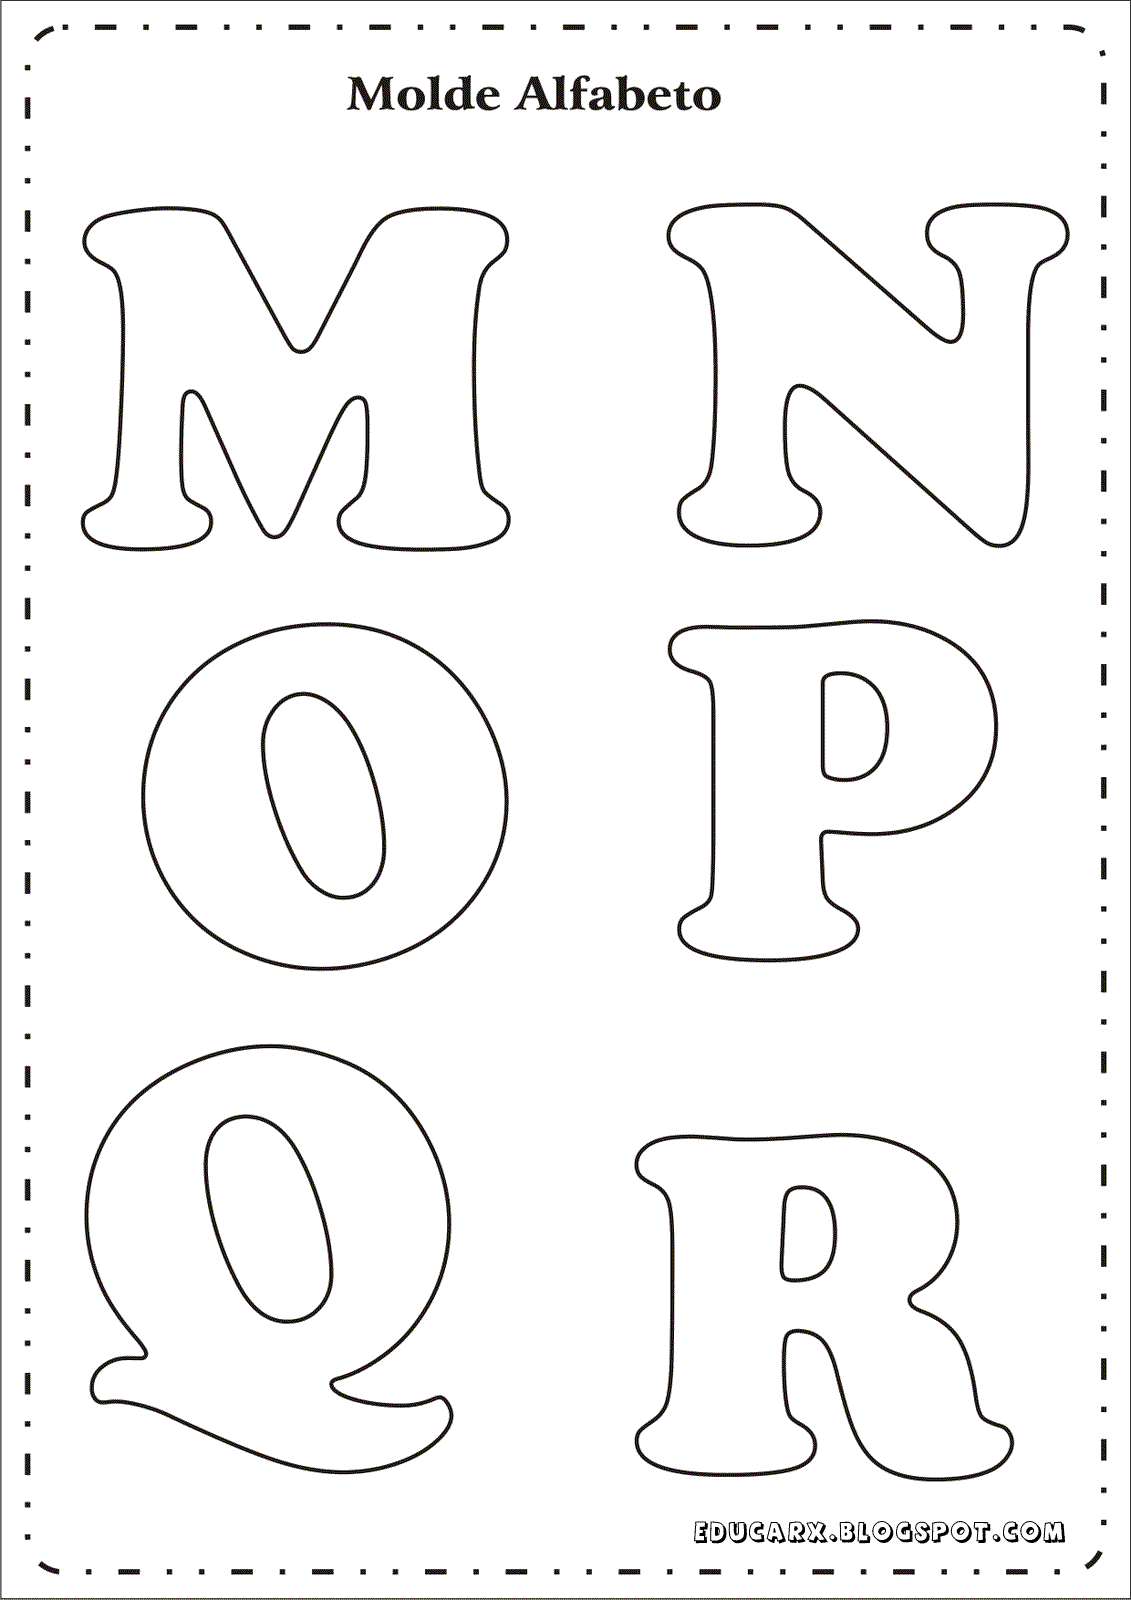 Modelo de letras para cartaz m n o p q r